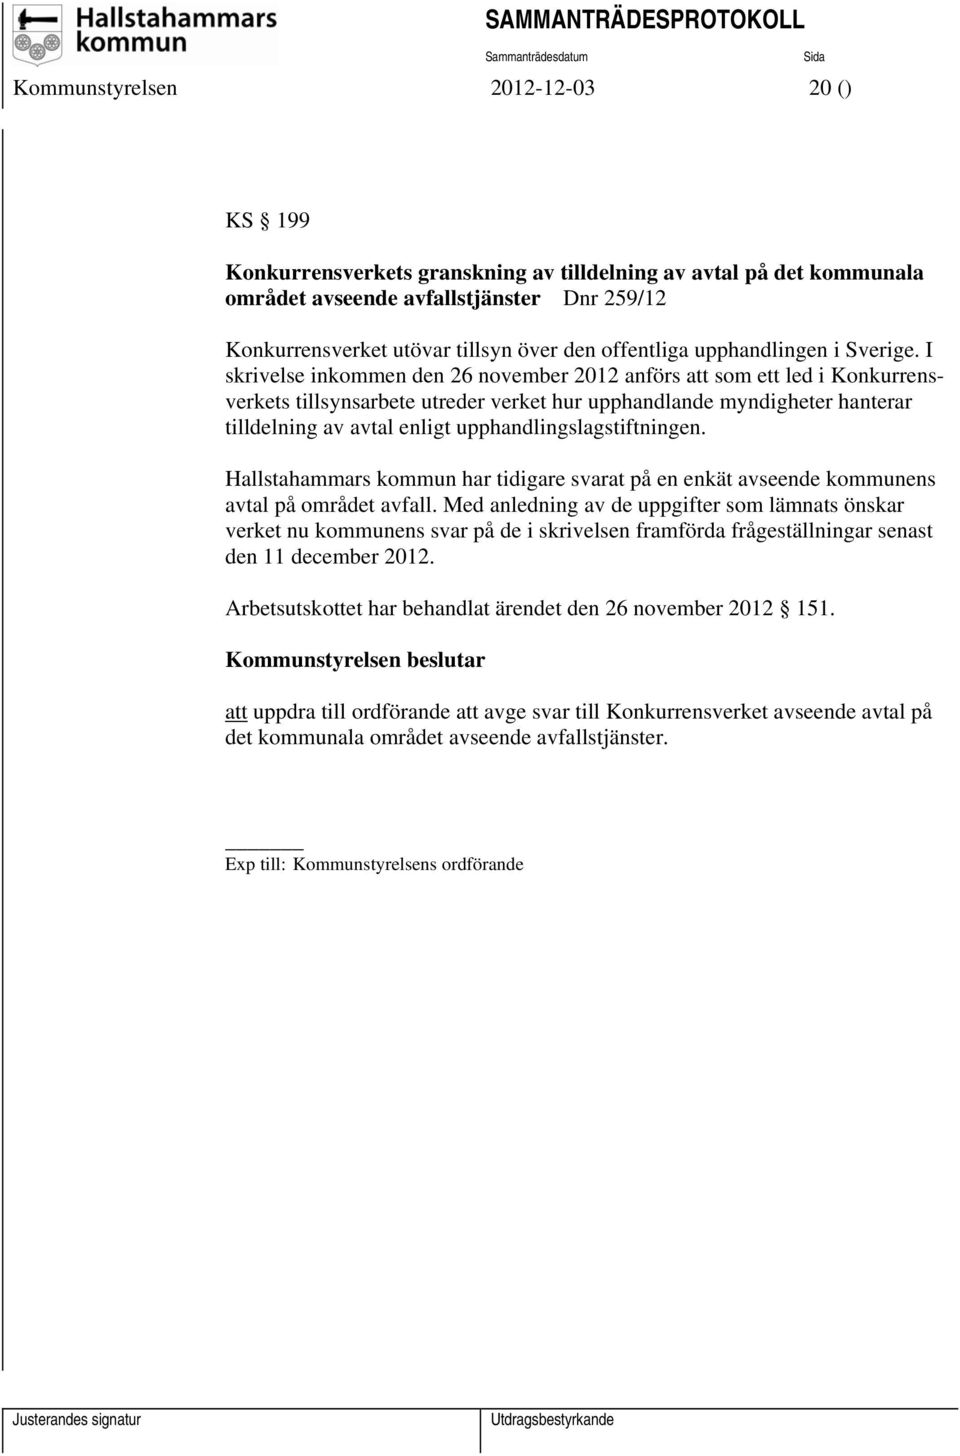 I skrivelse inkommen den 26 november 2012 anförs att som ett led i Konkurrensverkets tillsynsarbete utreder verket hur upphandlande myndigheter hanterar tilldelning av avtal enligt